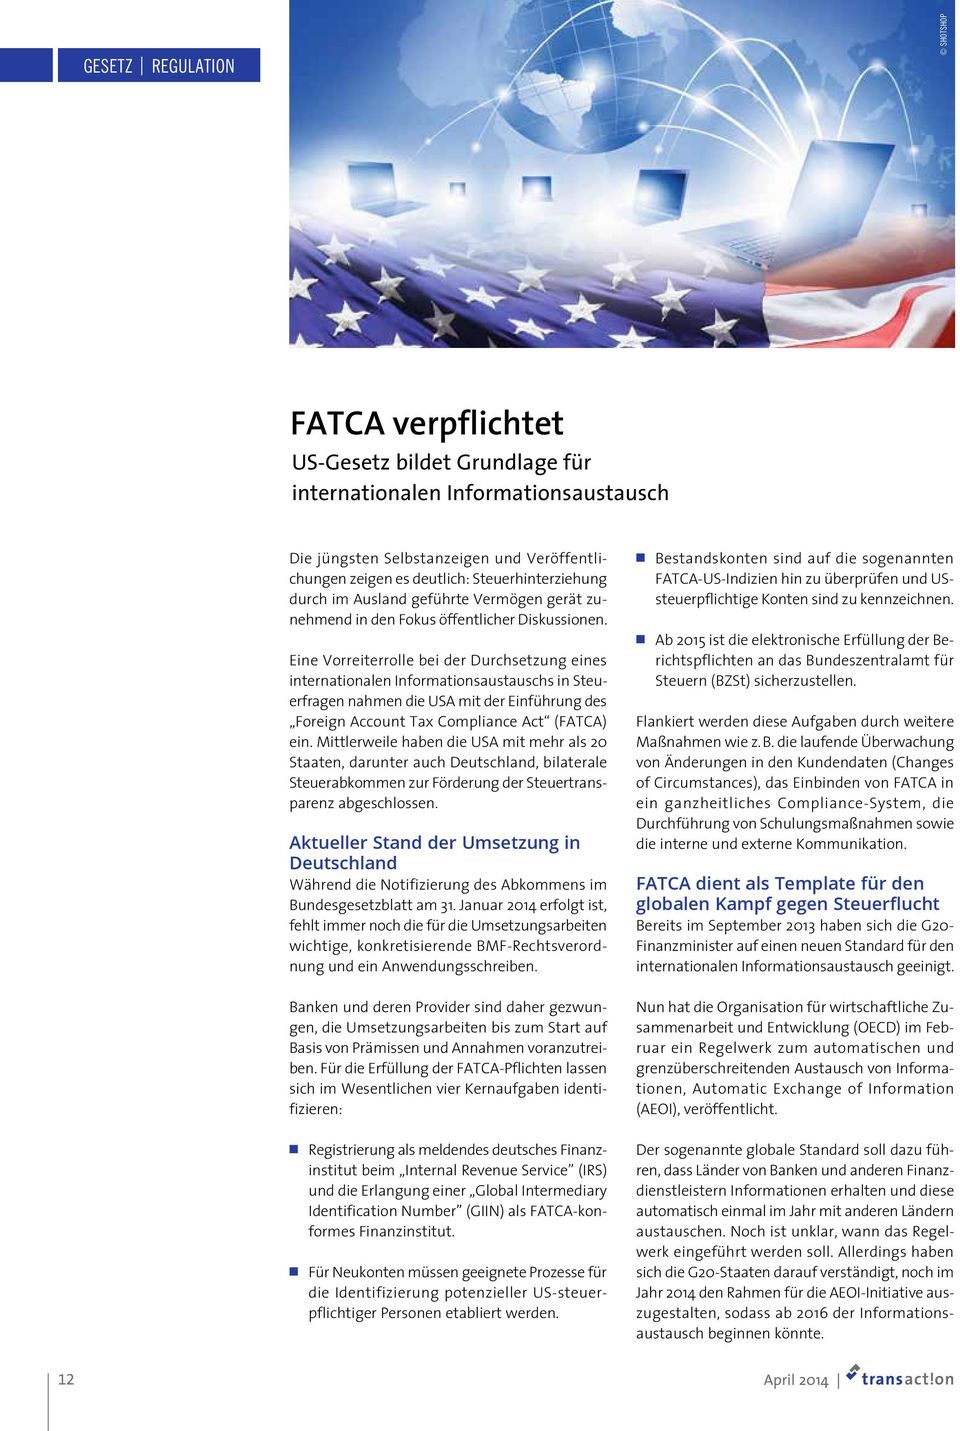 Eine Vorreiterrolle bei der Durchsetzung eines internationalen Informationsaustauschs in Steuerfragen nahmen die USA mit der Einführung des Foreign Account Tax Compliance Act (FATCA) ein.